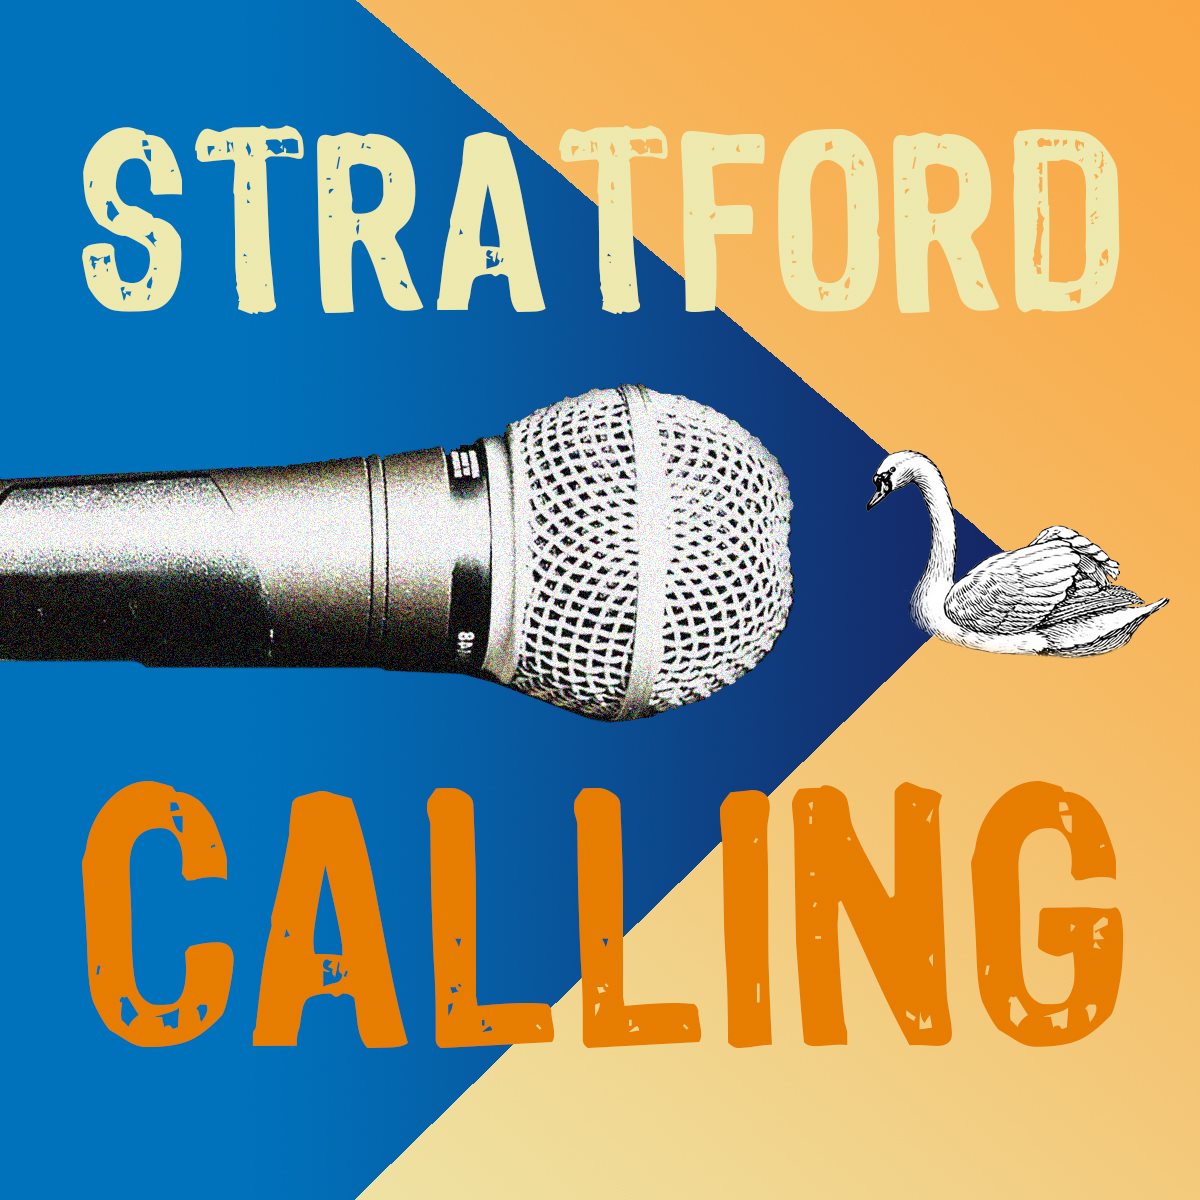 Stratford Calling Image